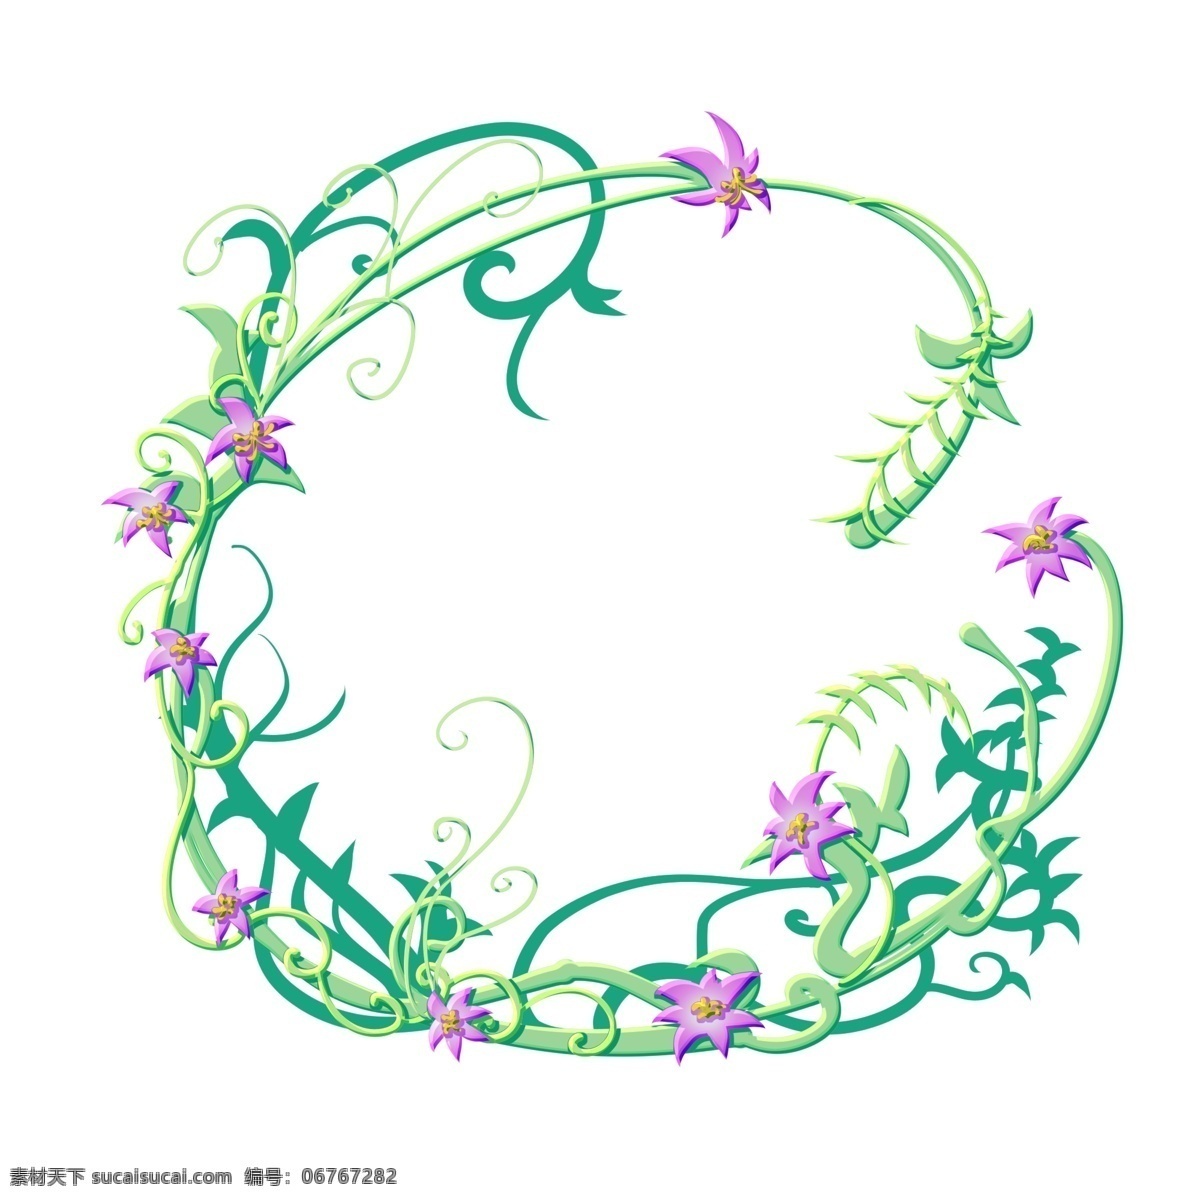 花 藤 装饰 花环 插画 花藤装饰花环 漂亮的花藤 植物 紫色花朵 漂亮的花朵 花卉 绿色枝条 圆形花环 边框装饰